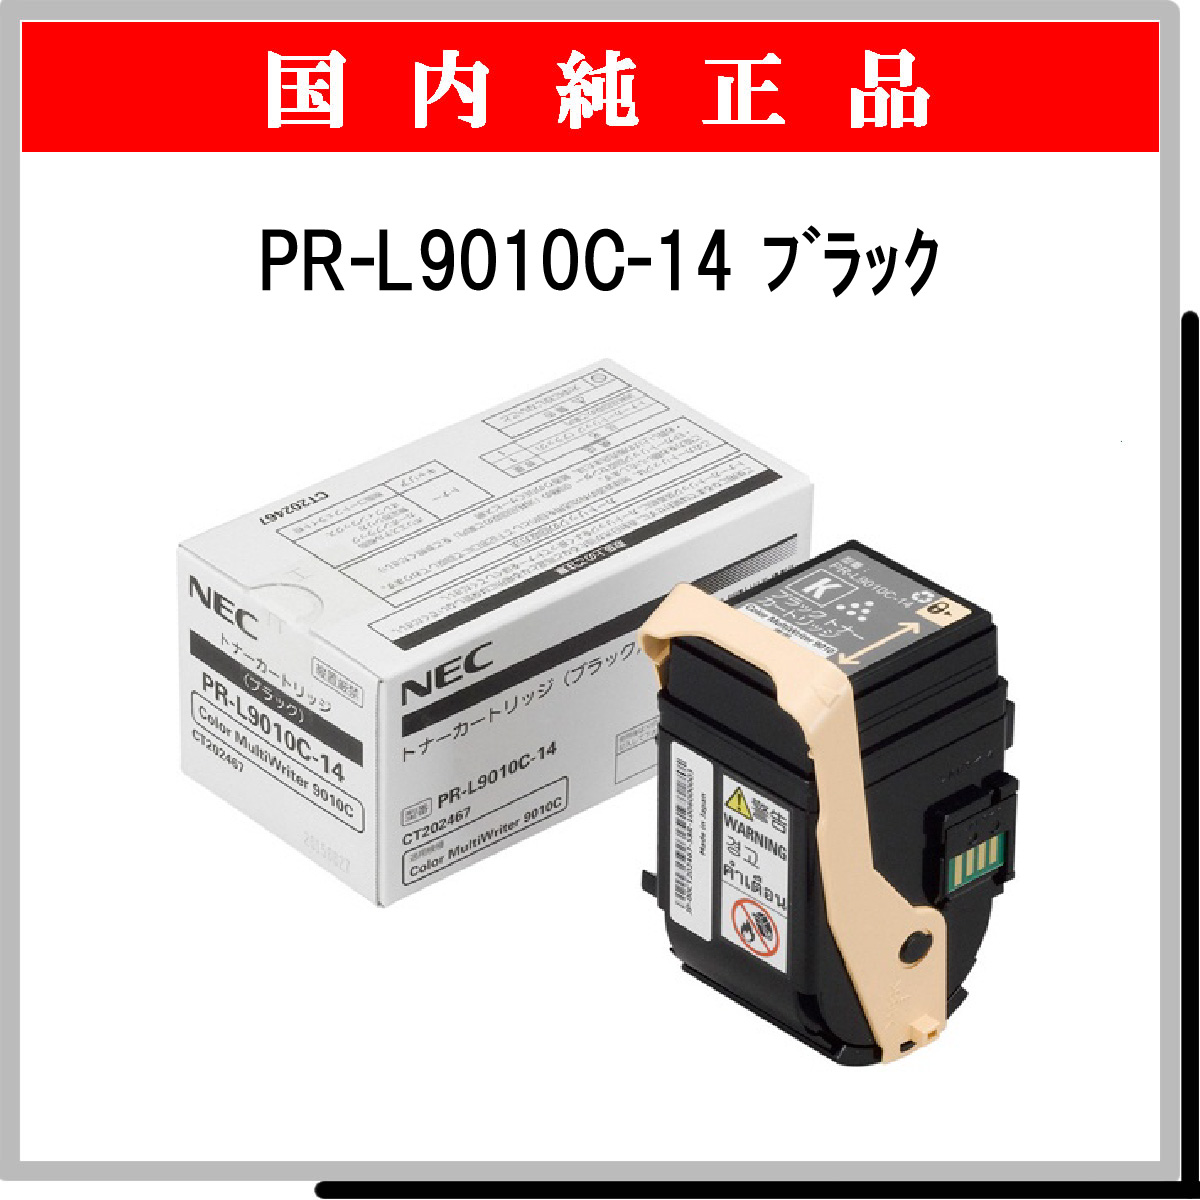 PR-L9010C-14 純正